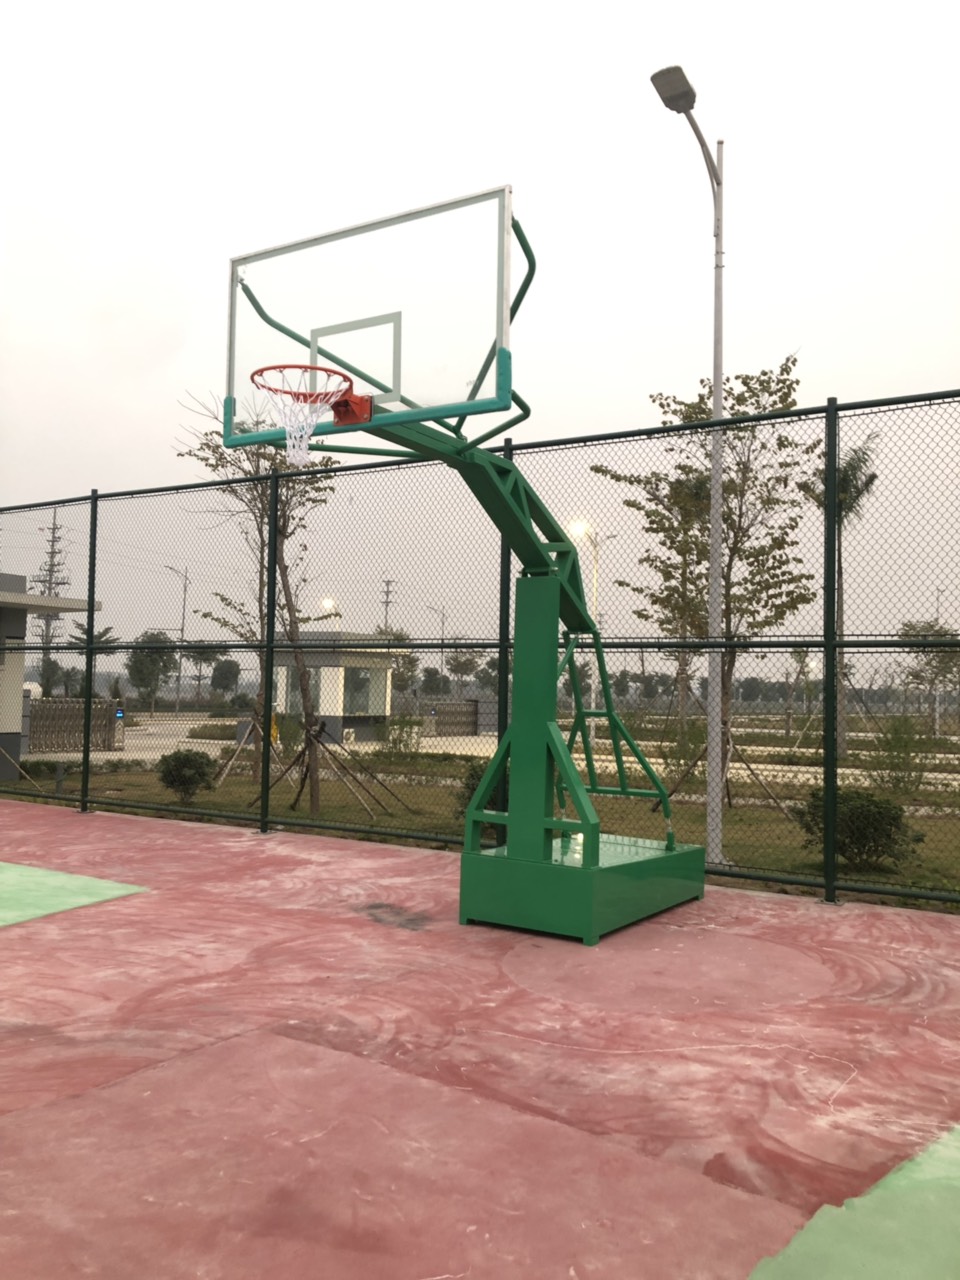 Hình ảnh thực tế trụ bóng rổ nhập khẩu TT-502 được thi công bởi Thể Thao Đông Á tại KDT Vinhomes The Harmony